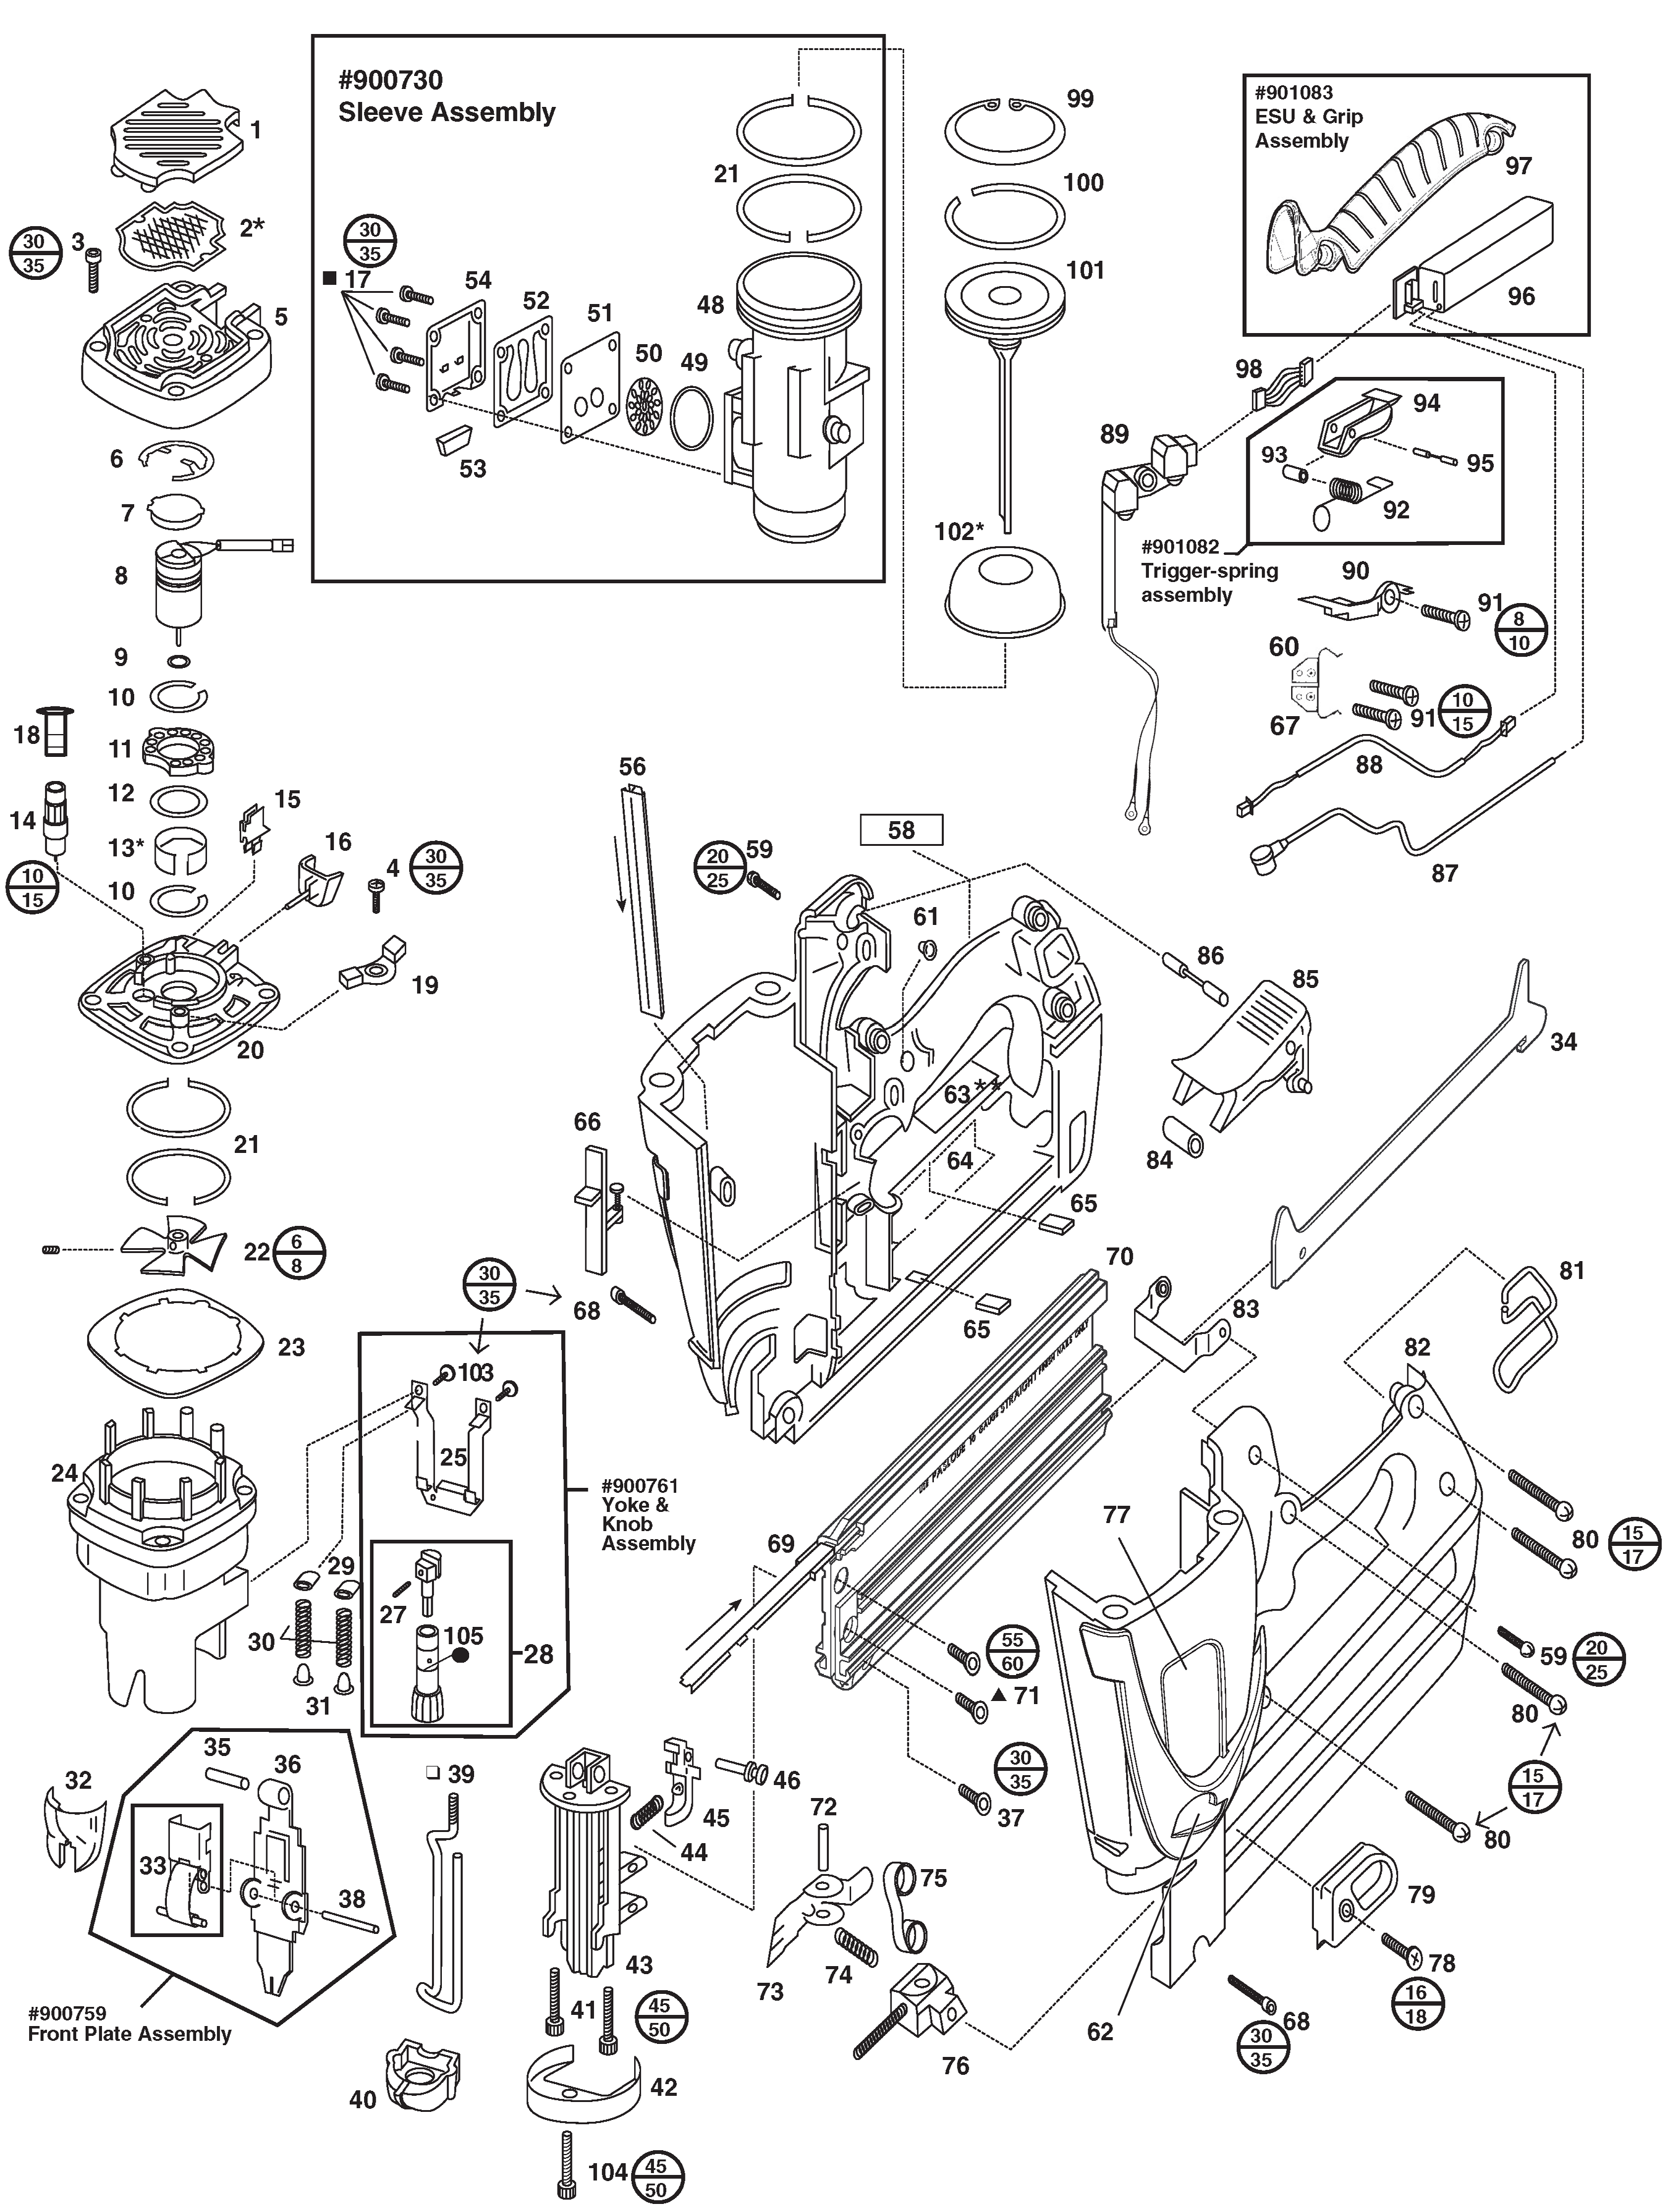 paslode framing nailer parts diagram